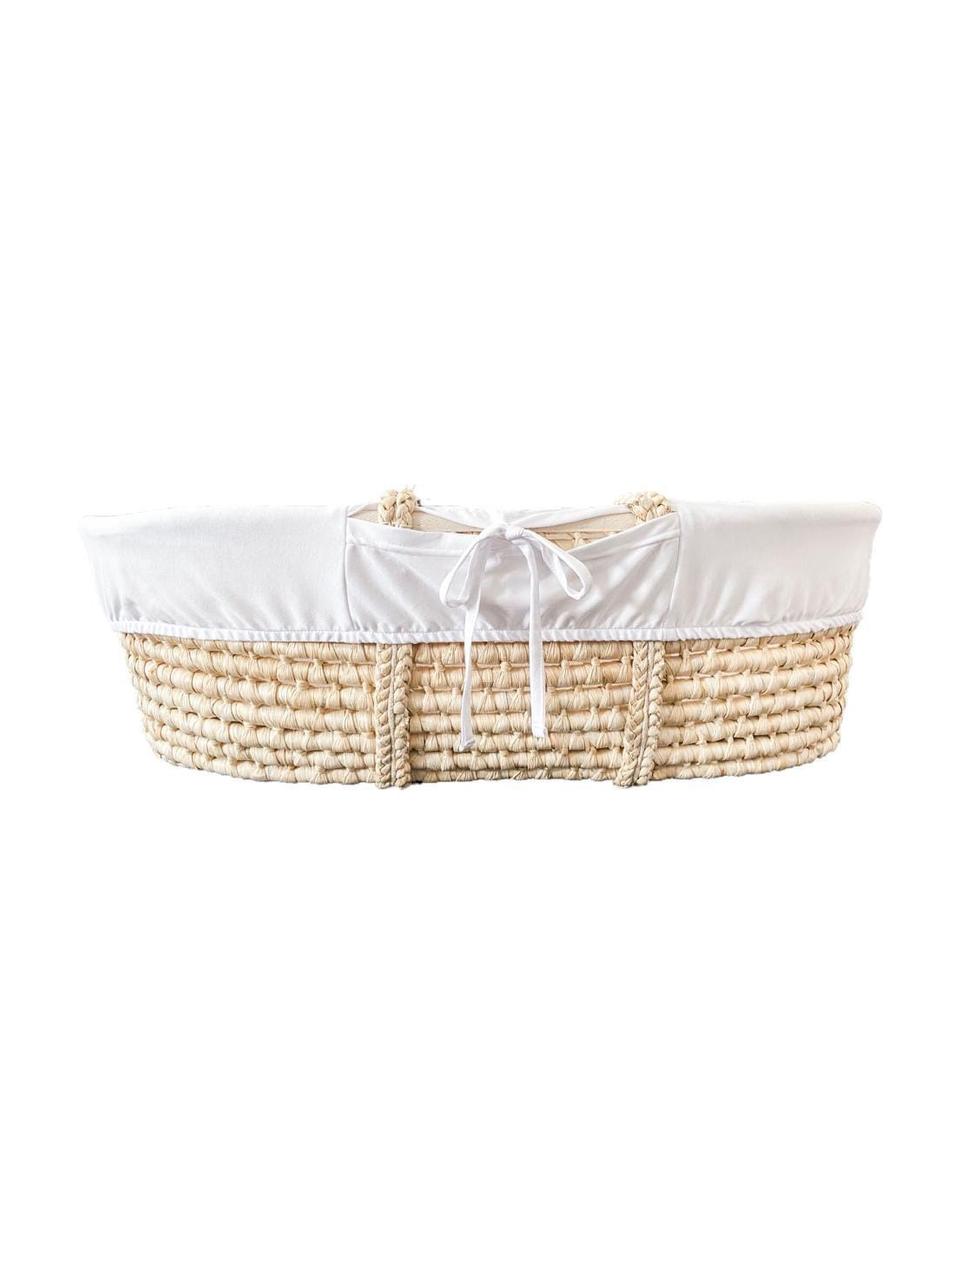 Baby-Korb Moses mit Matratze und Baumwollbezug, 3-tlg., Korb: Naurfaser, Beige, Weiß, B 83 x H 26 cm